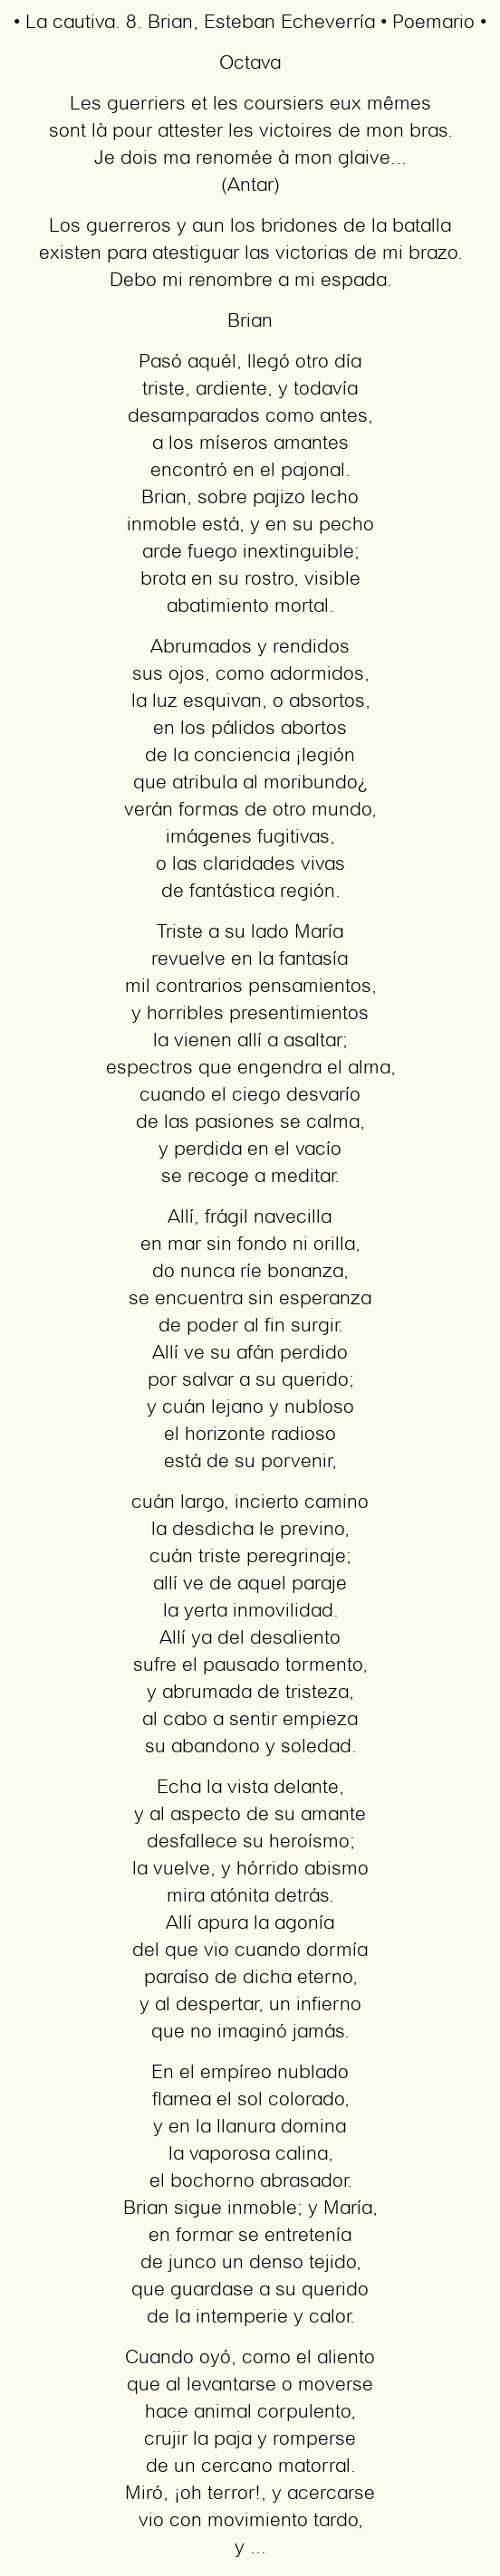 Imagen con el poema La cautiva. 8. Brian, por Esteban Echeverría